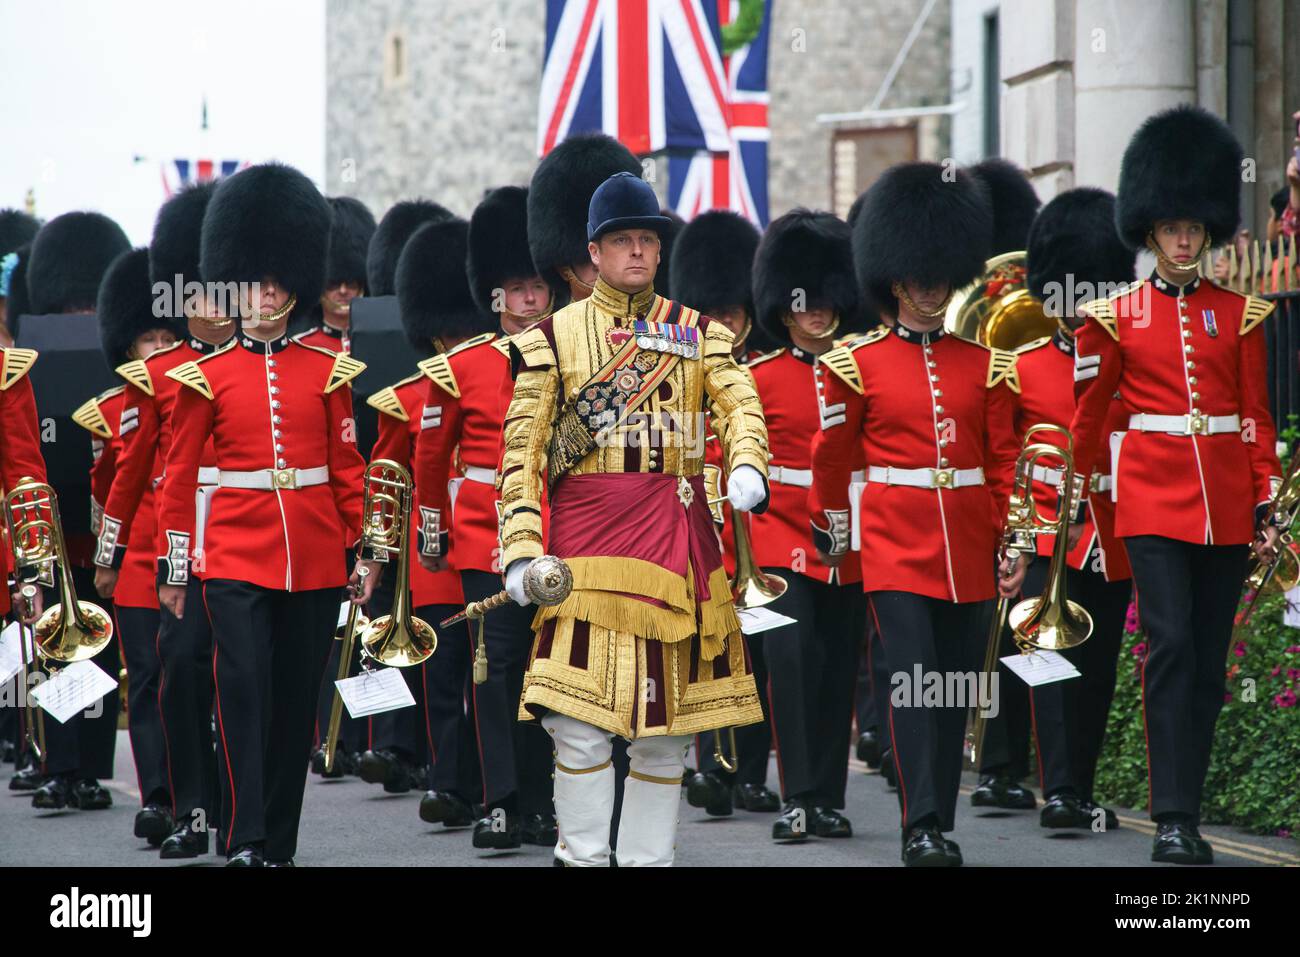 Gardes Grenadiers, escortés par un membre de la cavalerie de la maison, mars à Windsor; feu la reine Elizabeth II Château de Windsor. Banque D'Images